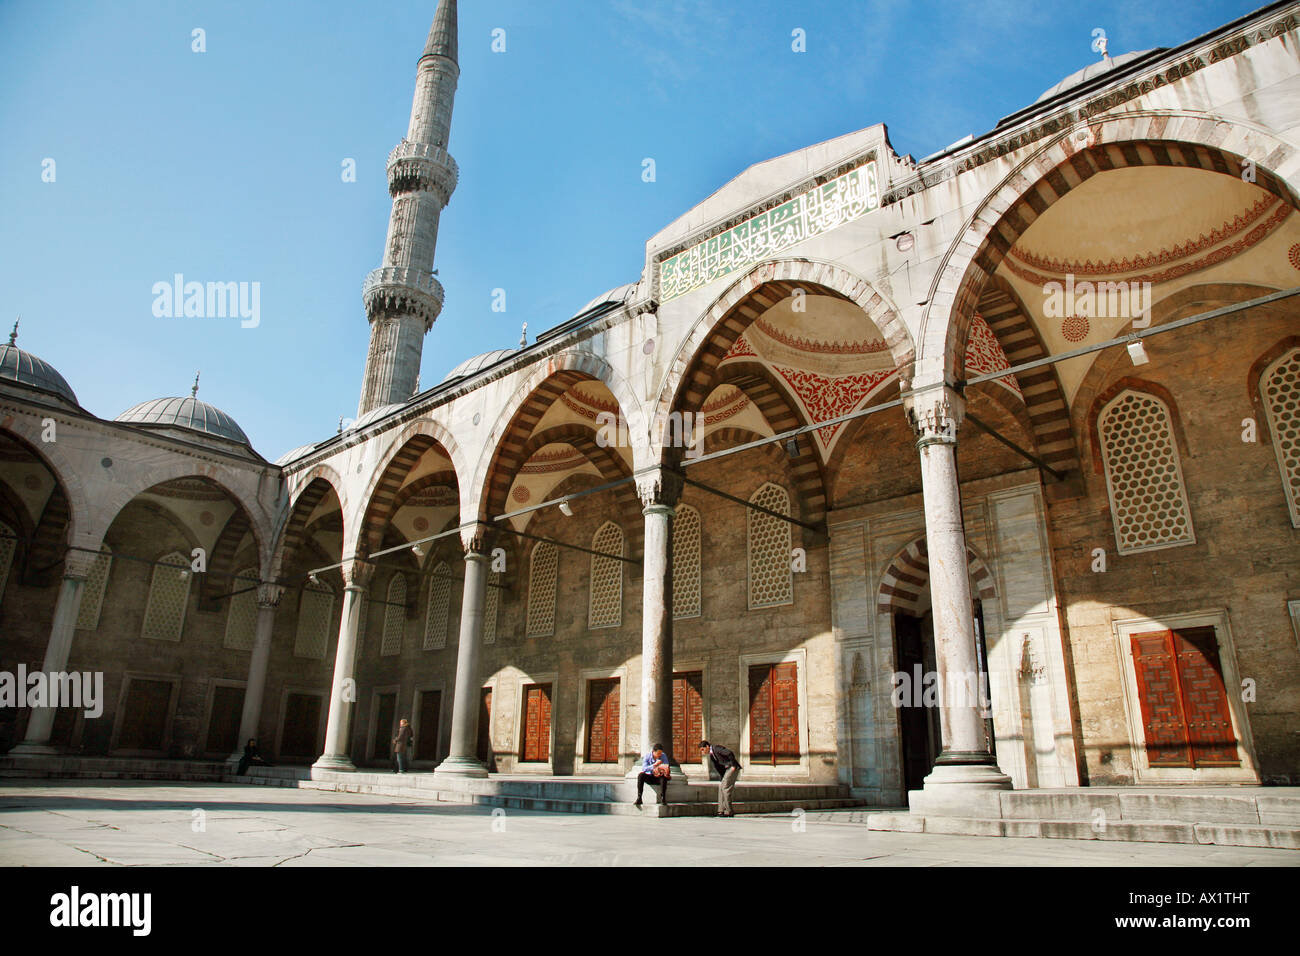 La cour dans l'enceinte de la Mosquée Bleue Istanbul Turquie Banque D'Images